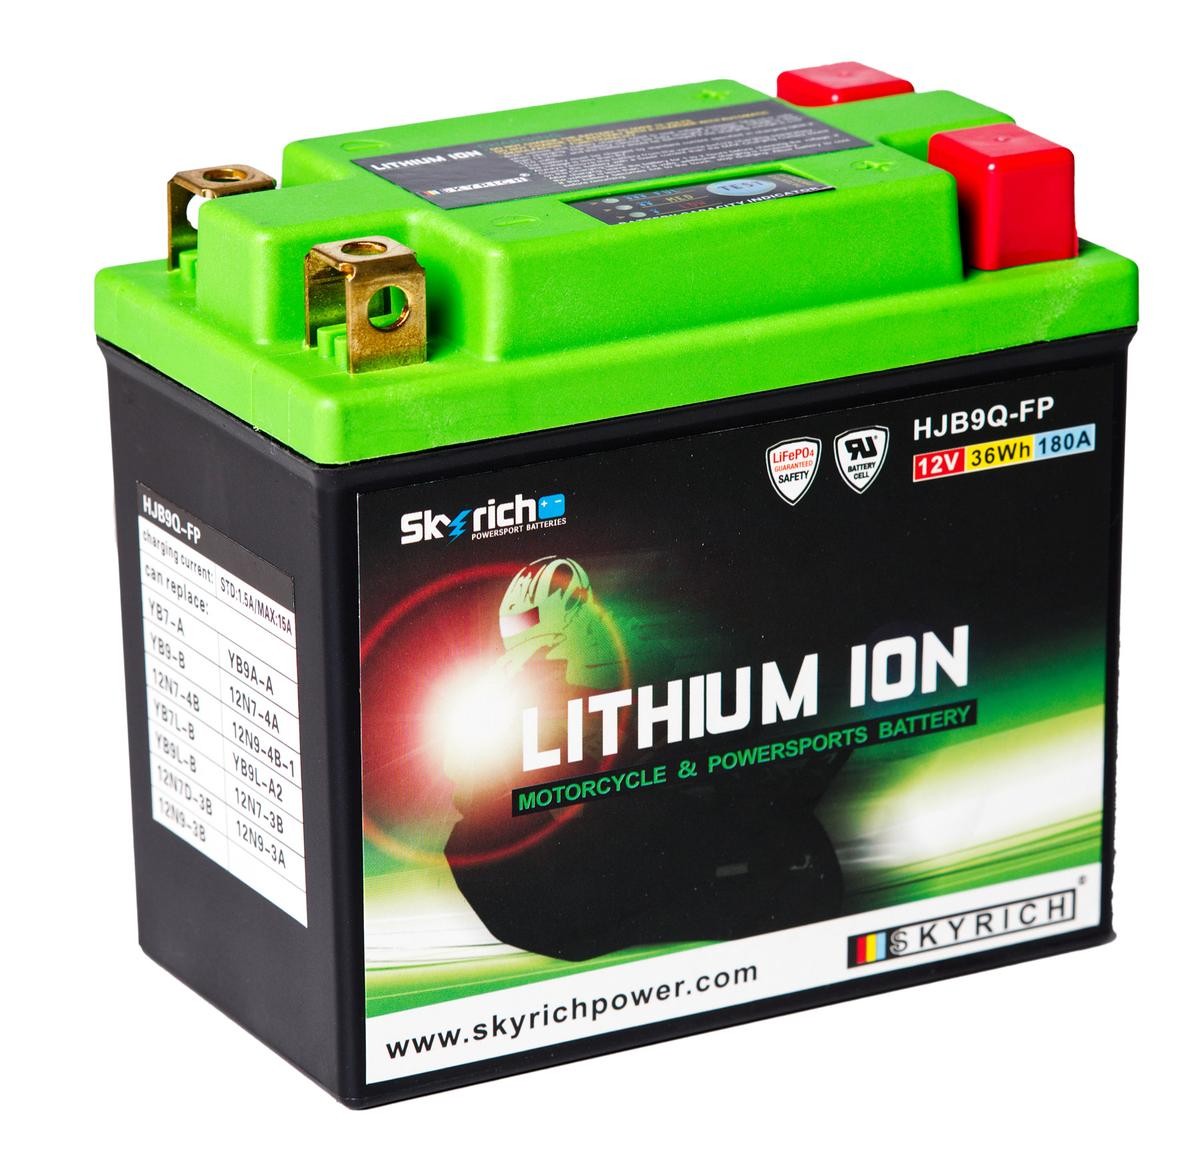 ITALJET JETSET Batterie 12V 3Ah 180A N Li-Ionen-Batterie SKYRICH LITHIUM ION HJB9Q-FP